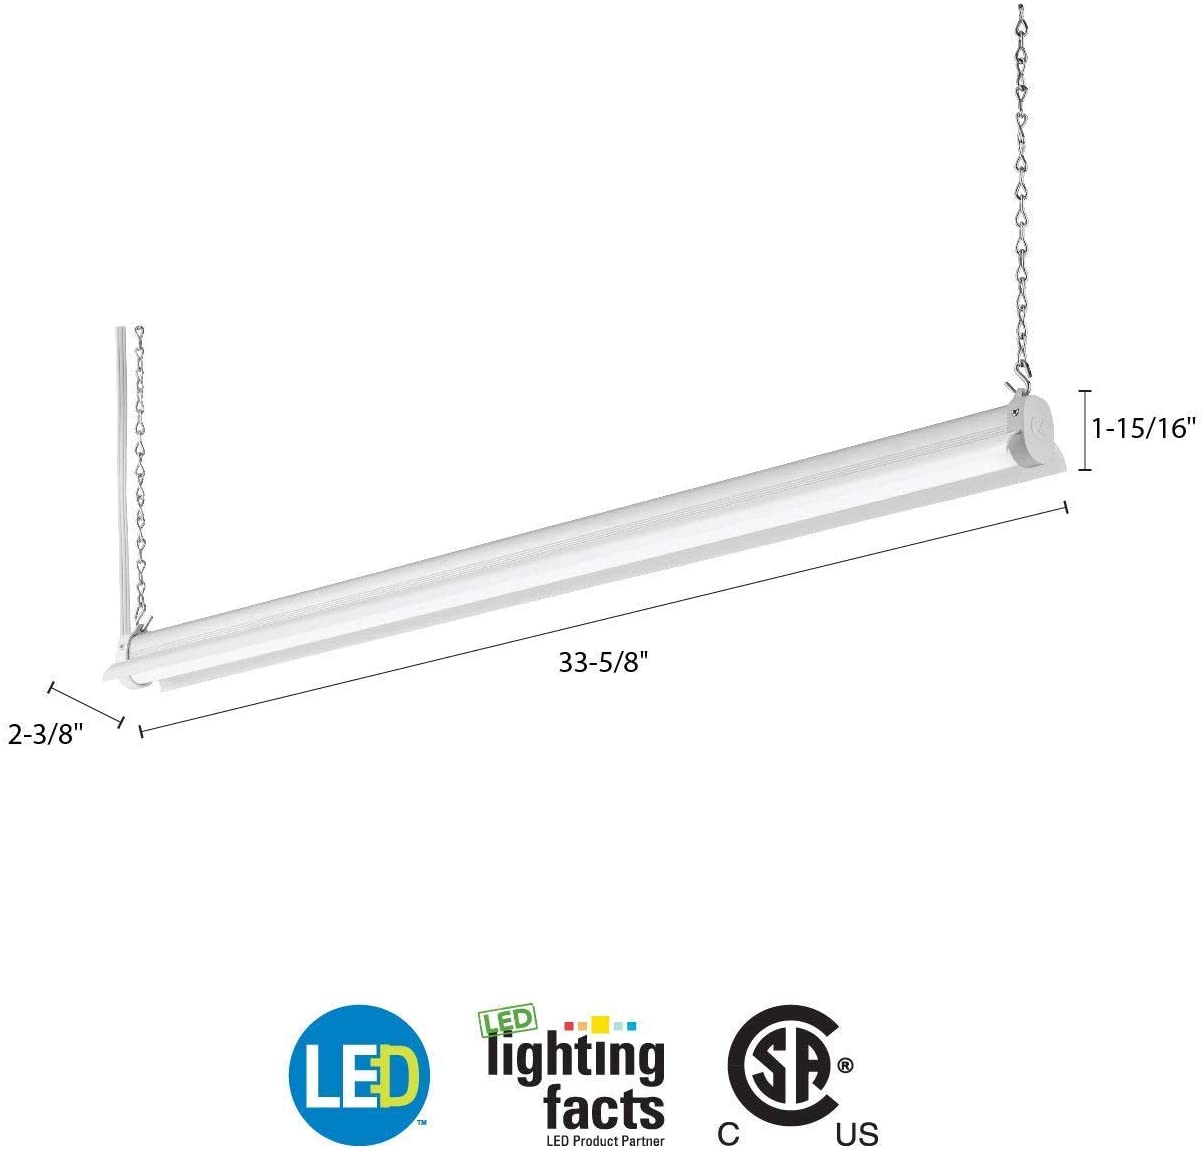 Lithonia Lighting SHLP 36IN 40K 80CRI DNA LED Shop Light, 4000K, 3000 lumens, 36 Inch, White